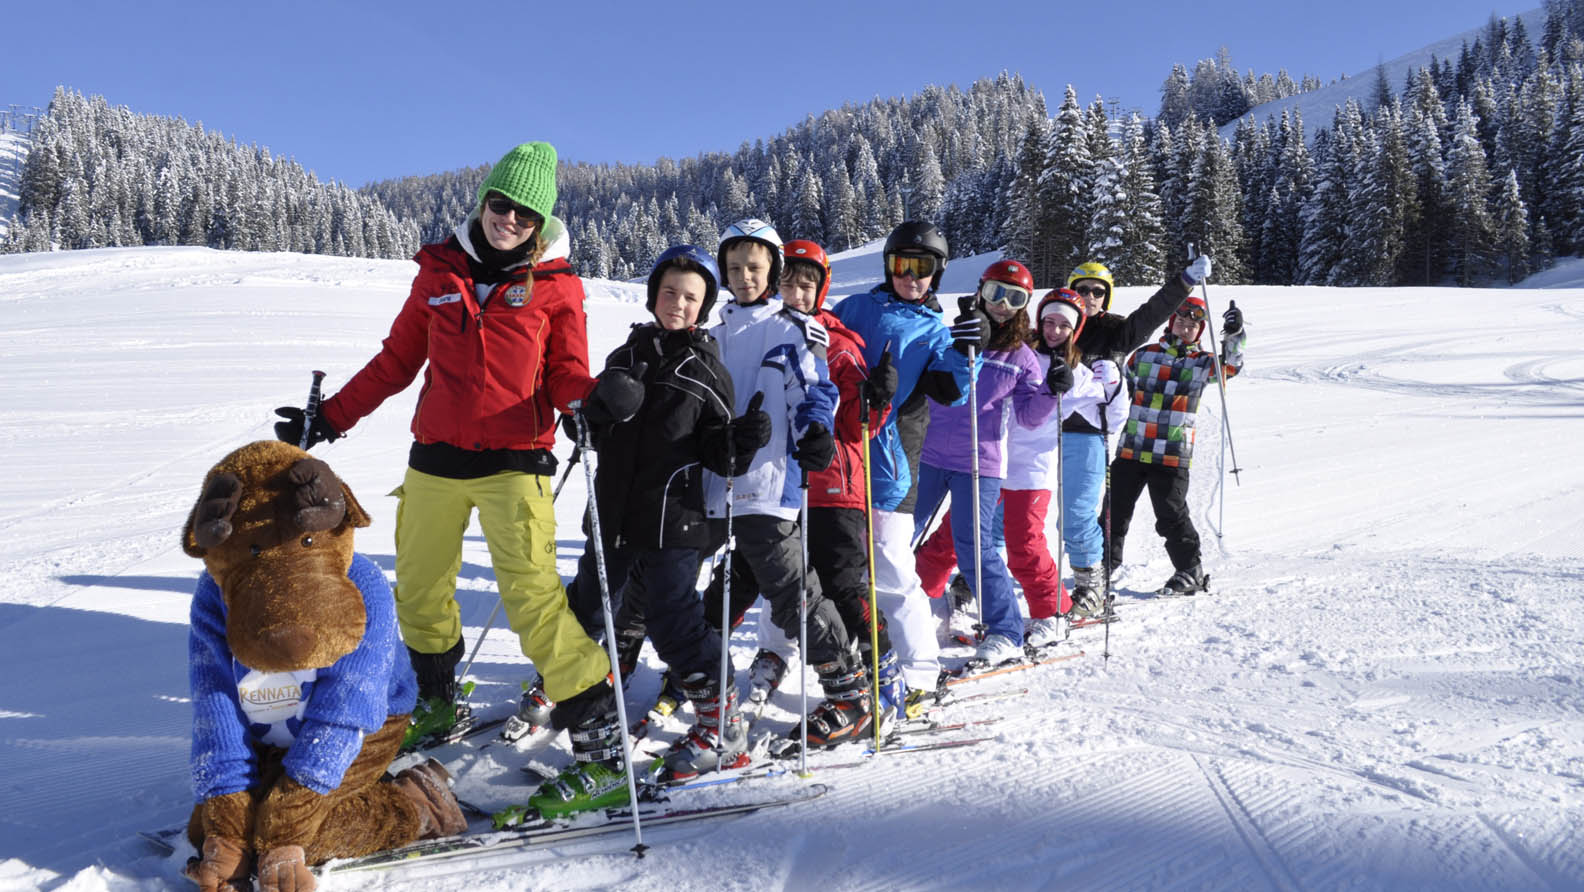 Scuola di sci ad Asiago, settimana bianca per tutta la famiglia